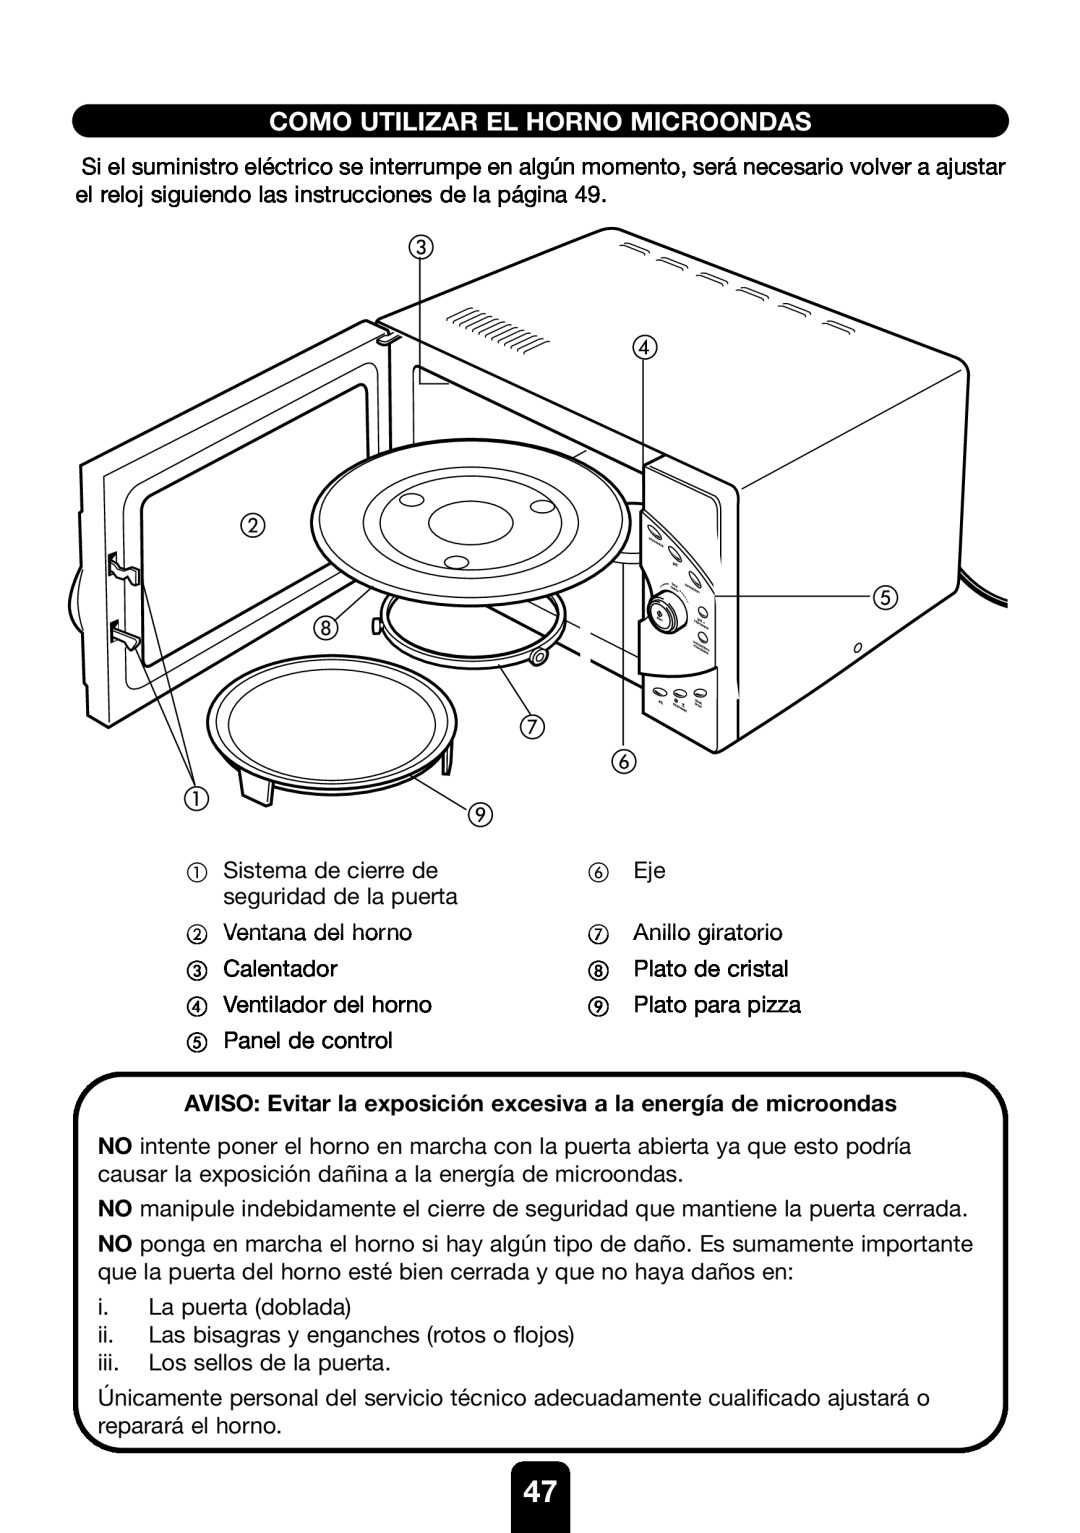 Kenwood MW761E manual Como Utilizar El Horno Microondas, AVISO Evitar la exposición excesiva a la energía de microondas 